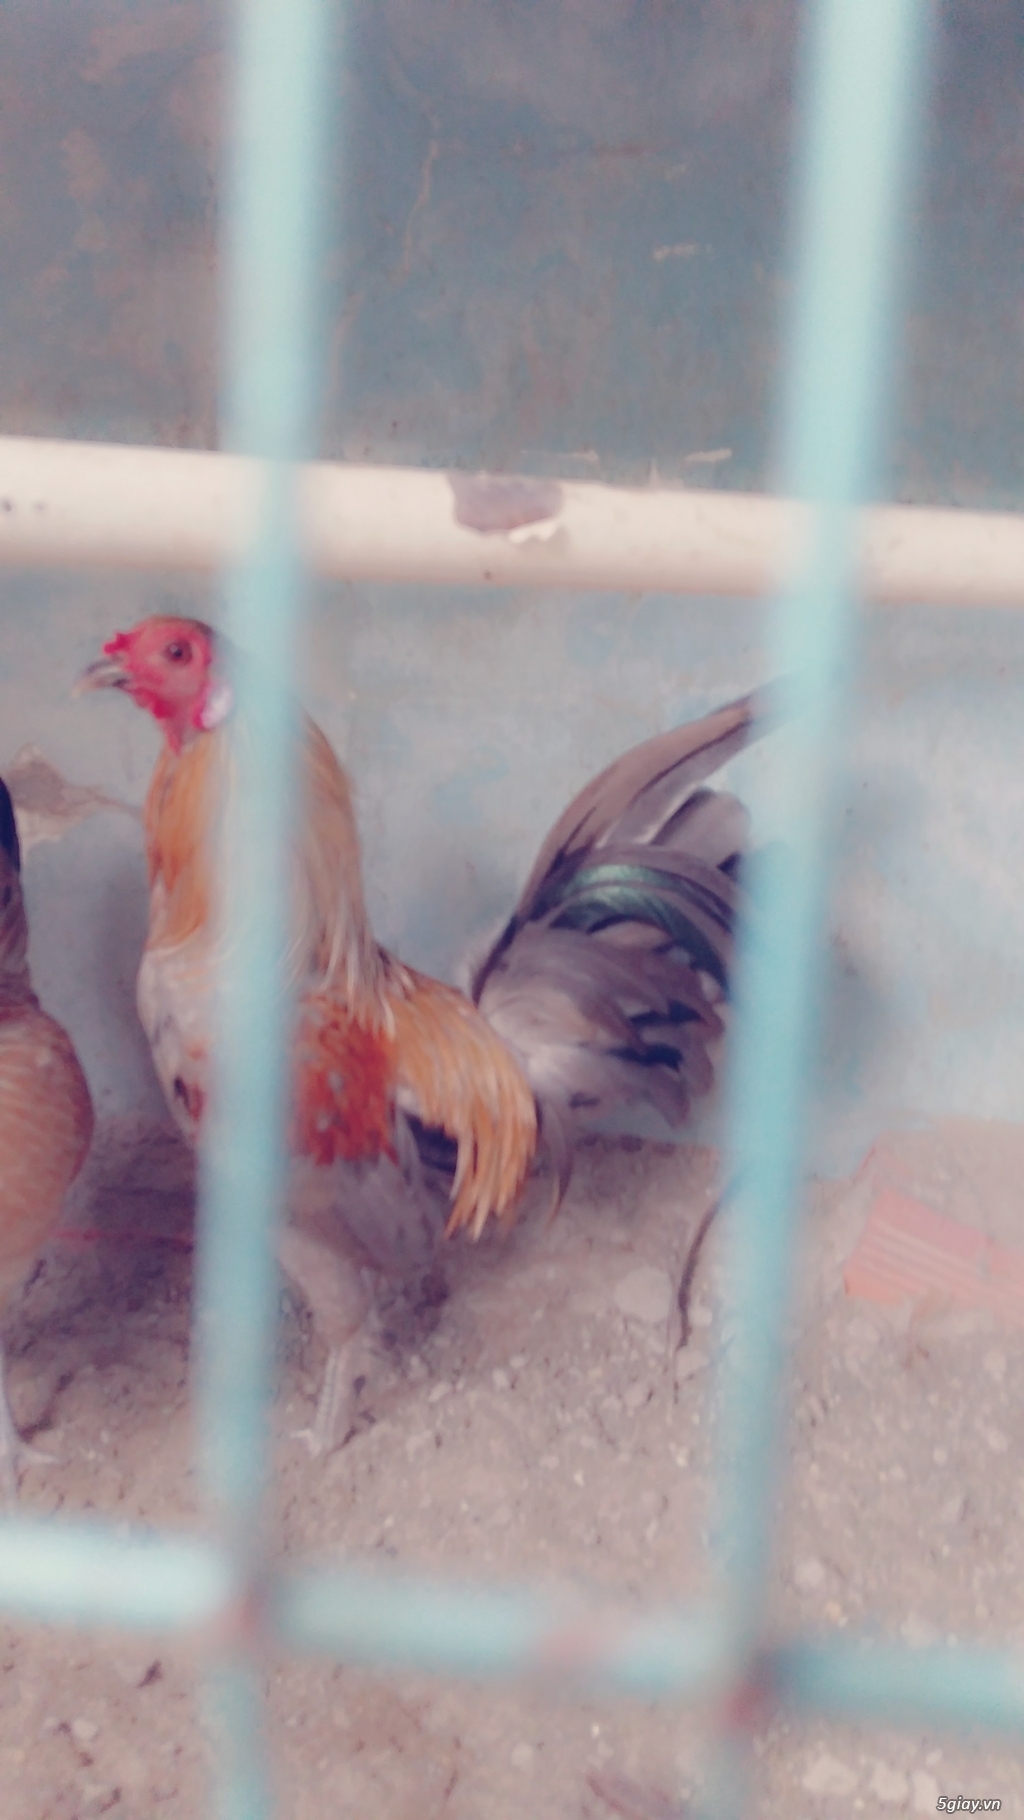 HCM -  Cần bán gấp 3 chú gà đẹp , khỏe mạnh